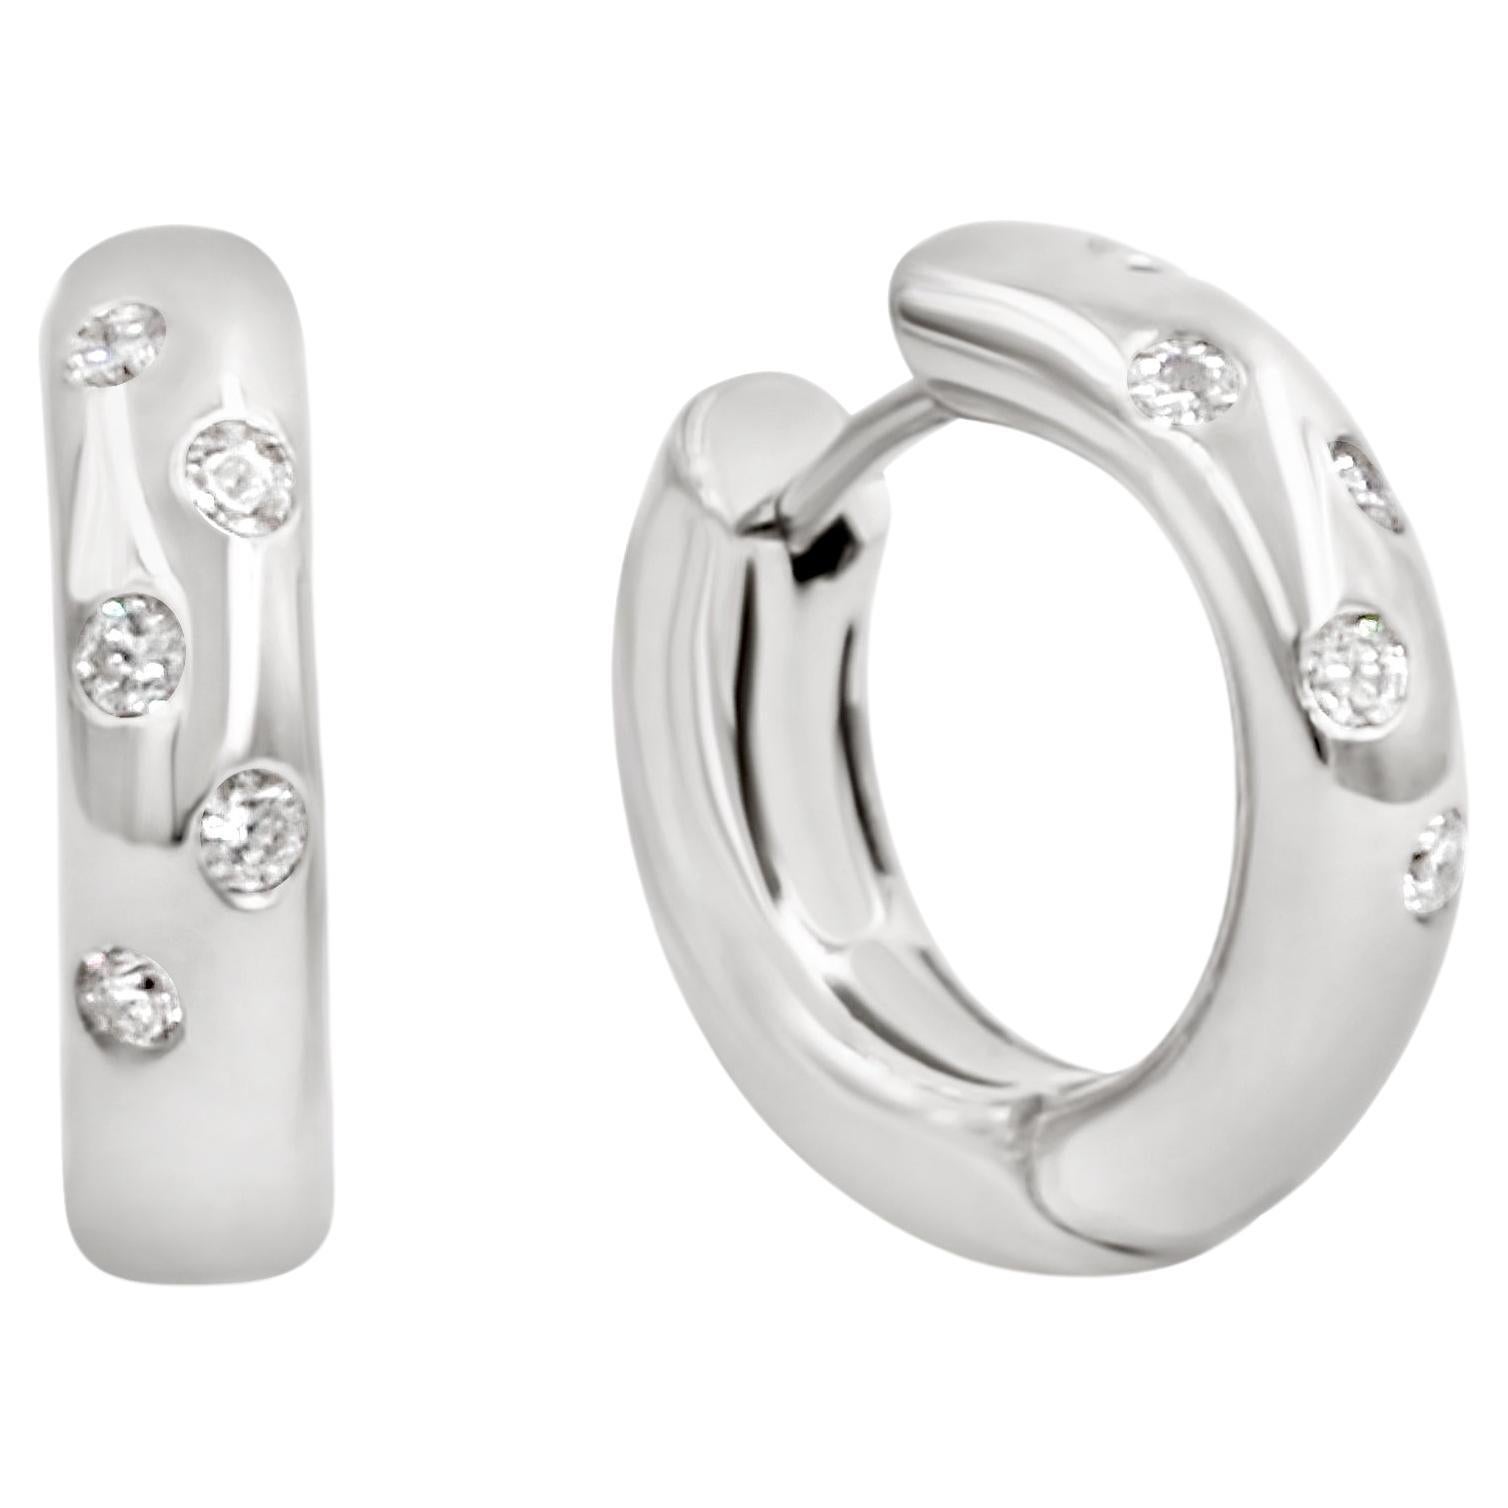 18 Karat White Gold White Diamonds Garavelli Round Huggie Earrings For Sale